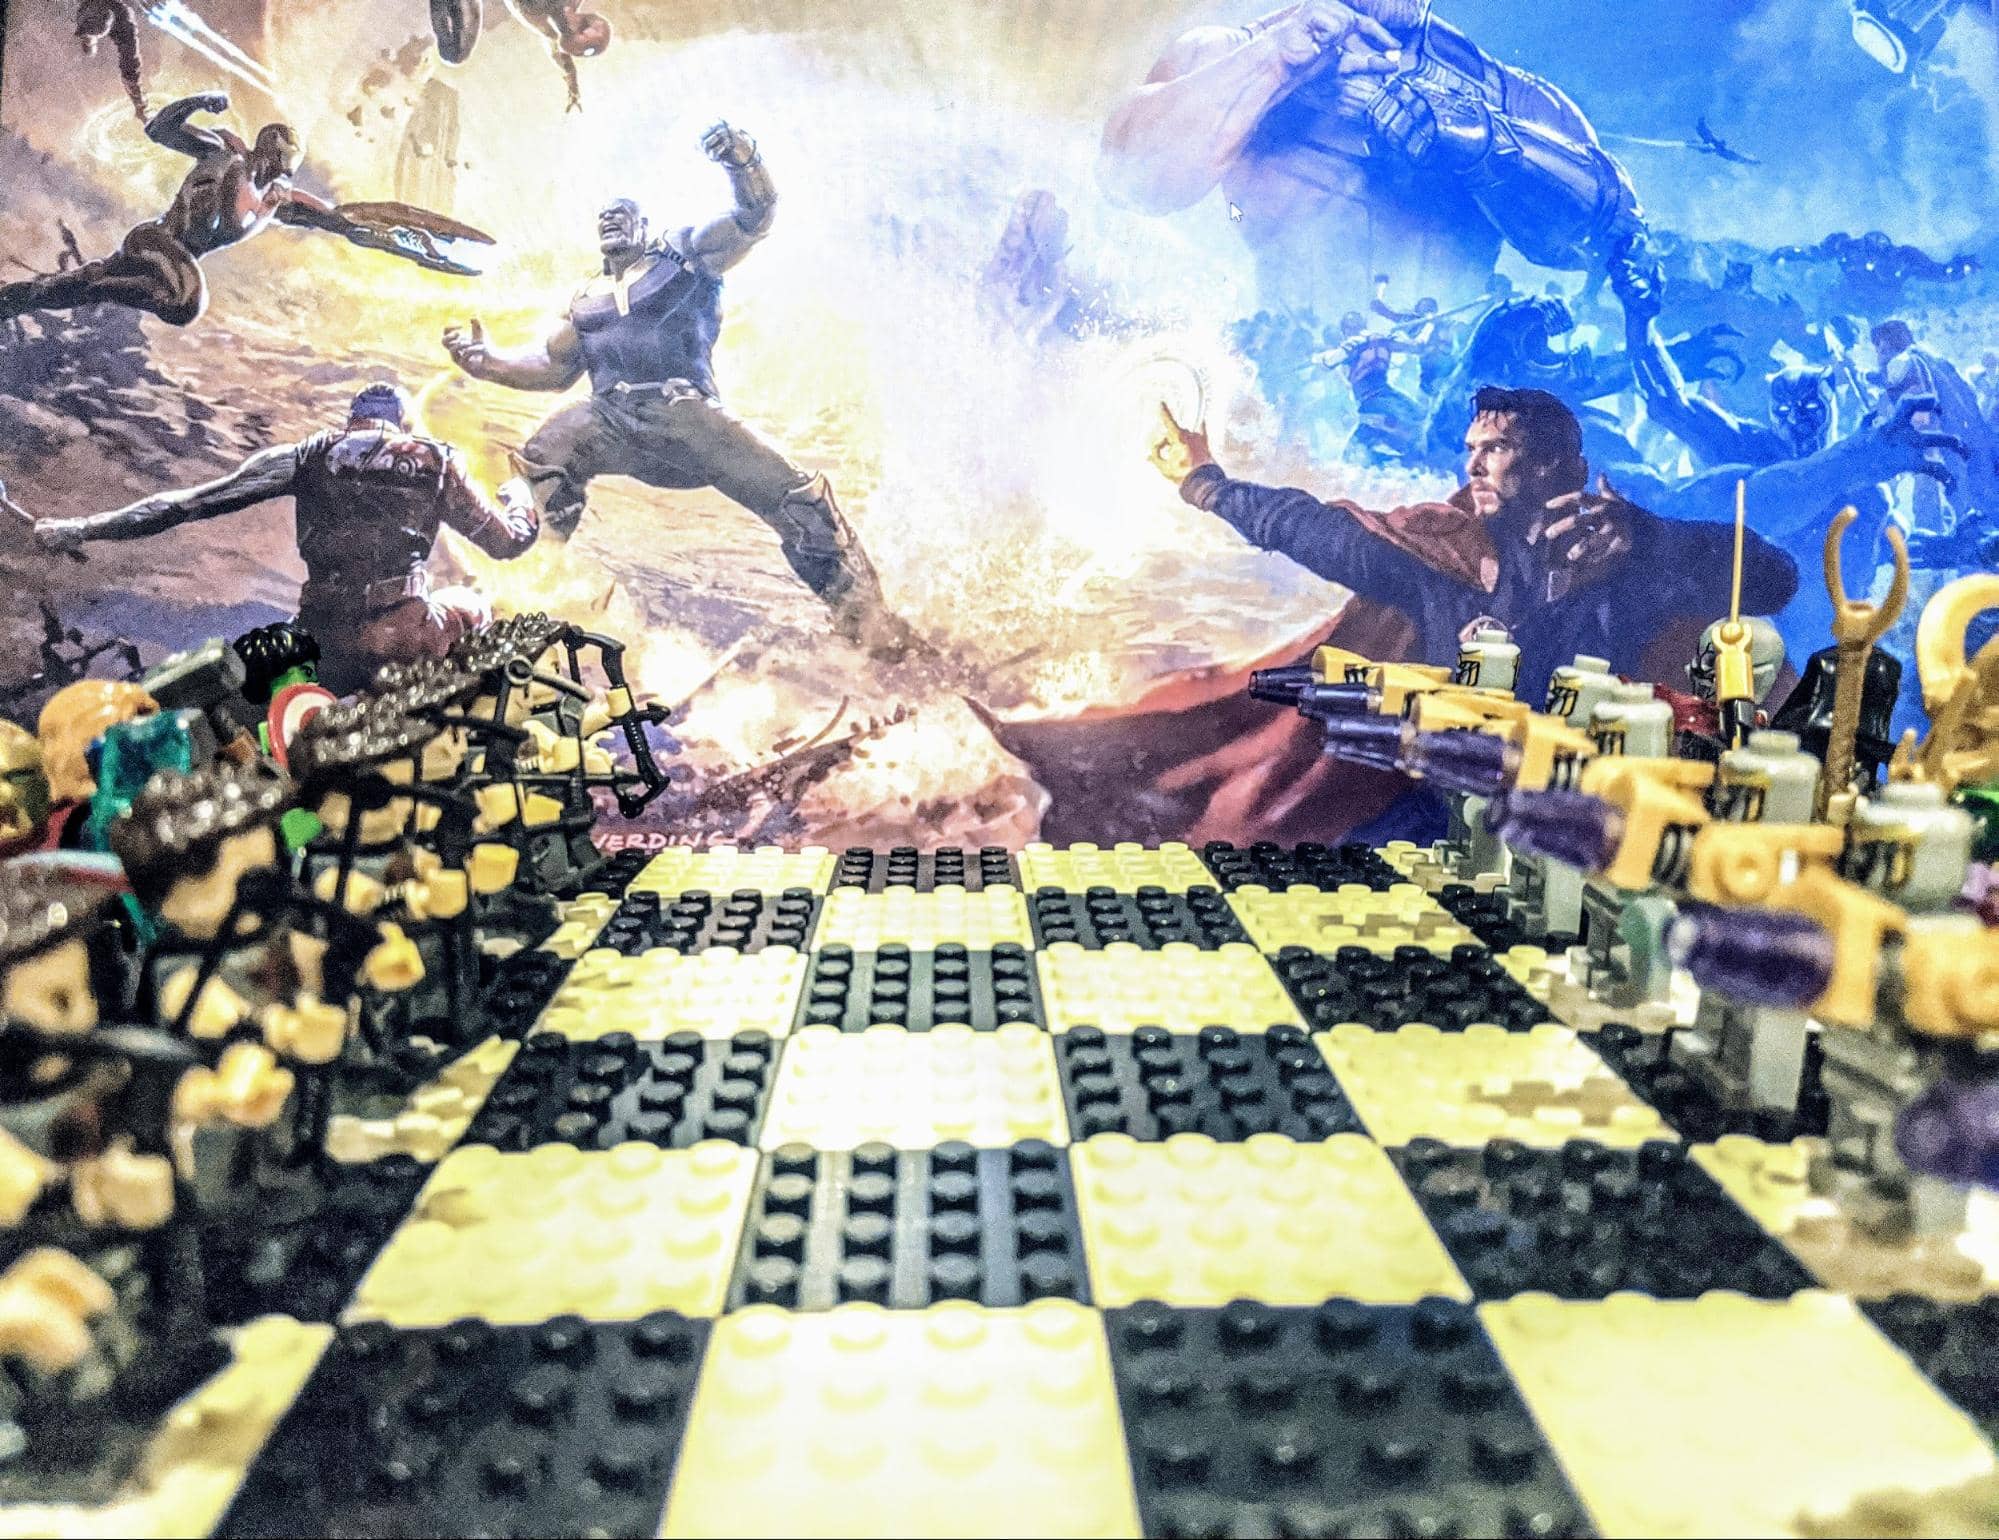 Mais um Xadrez LEGO: Knights' Kingdom Chess Set! « Blog de Brinquedo